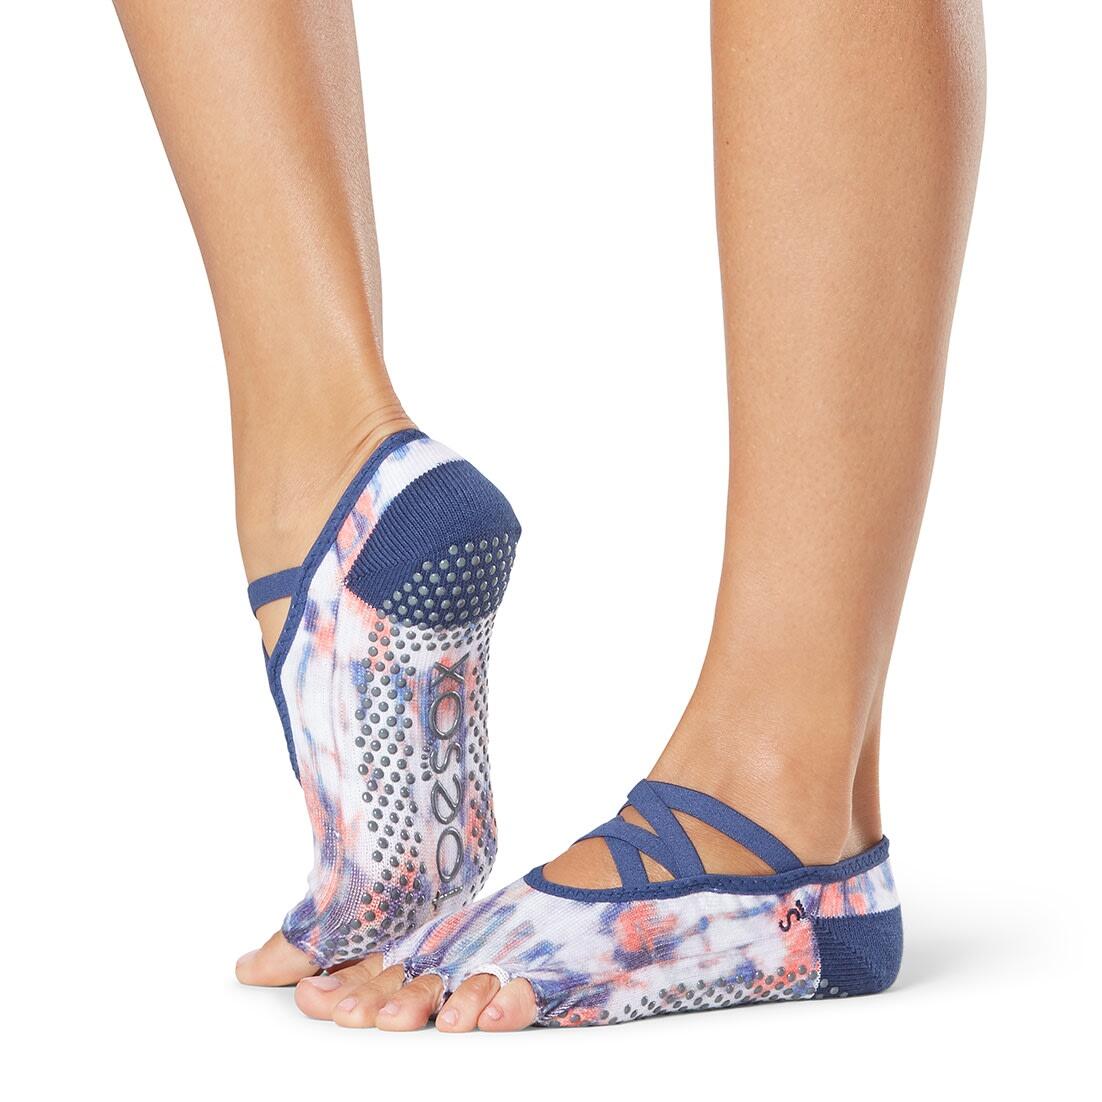 FITNESS-MAD Womens/Ladies Elle Santa Fe Half Toe Socks (Blue/White/Peach)